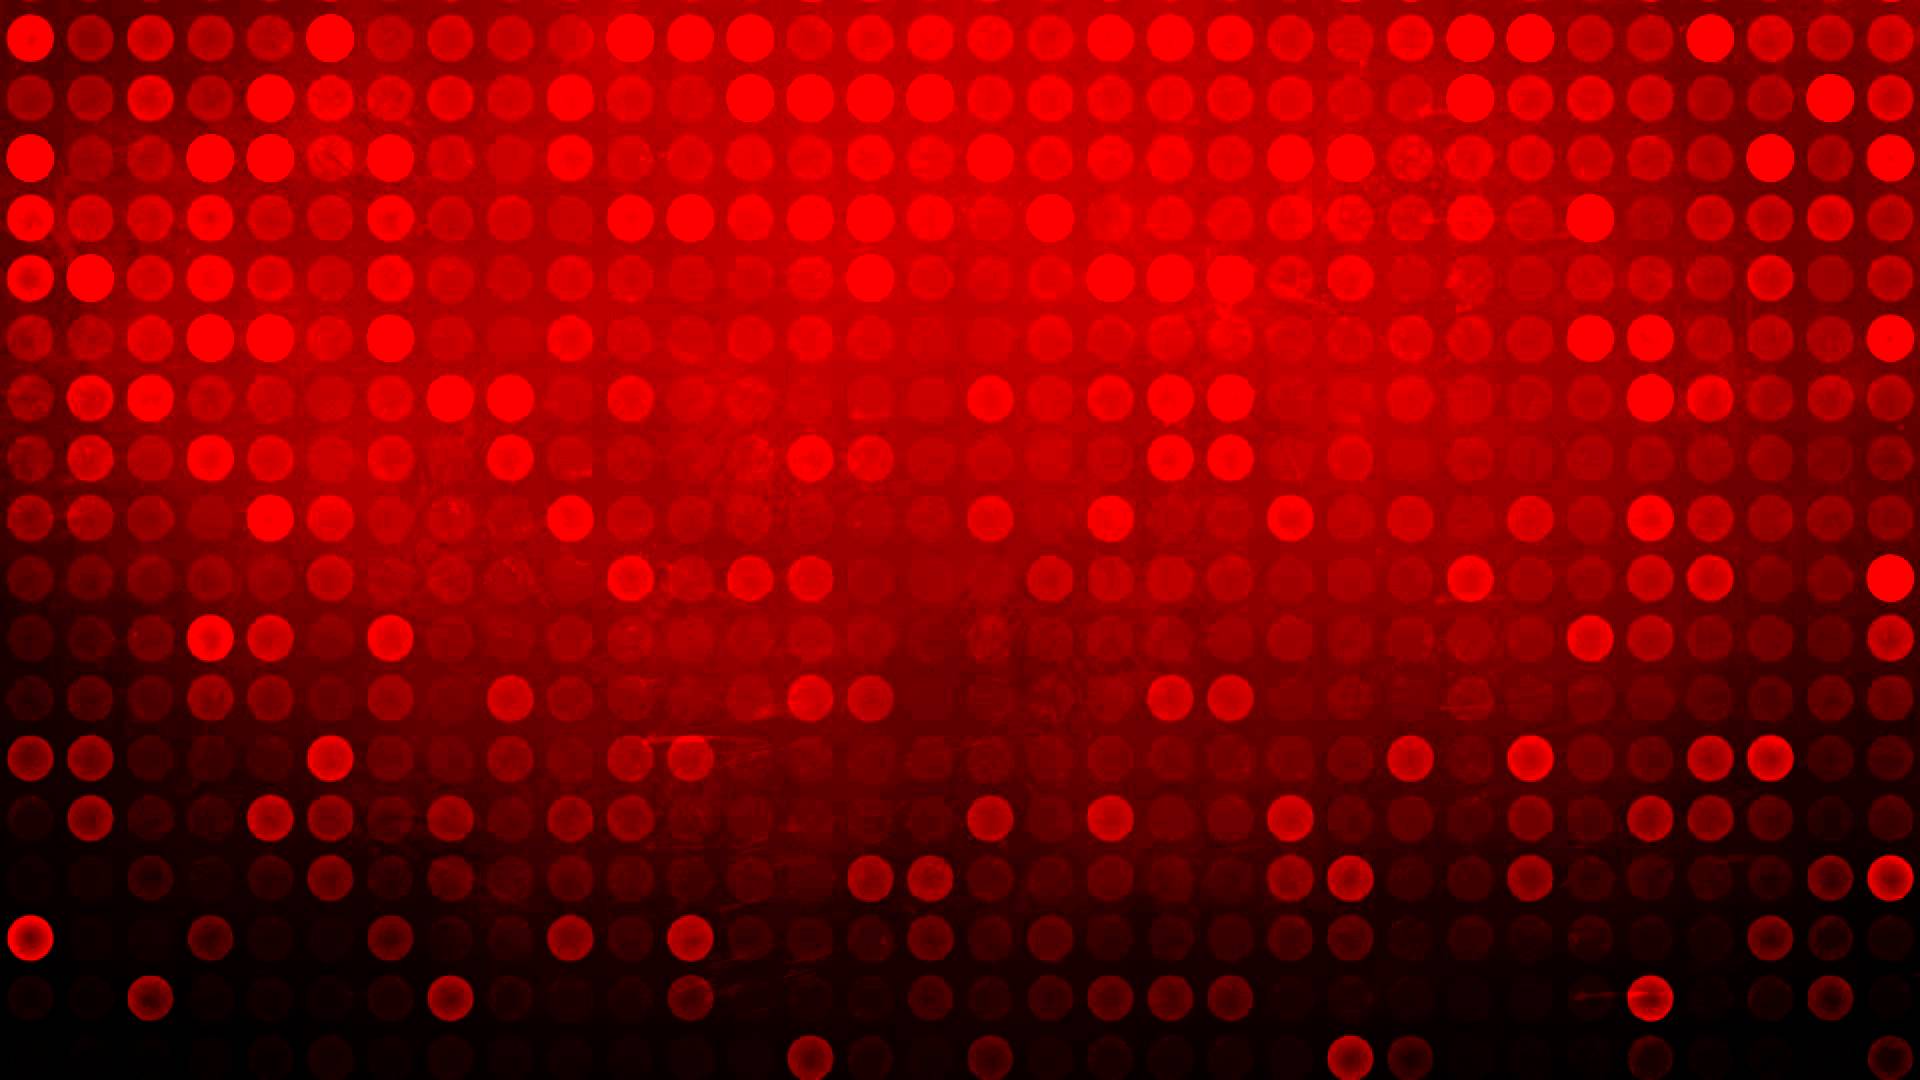 Hình nền Đỏ cho PC - Red Wallpaper for PC Khởi động máy tính cùng với hình nền đỏ cho PC tràn đầy sinh lực để tạo động lực cho một ngày làm việc hiệu quả. Chúng tôi sẽ giúp bạn lựa chọn những bức hình nền đẹp và ấn tượng nhất để tăng thêm niềm tin vào bản thân và động lực hoàn thành mục tiêu của bạn.